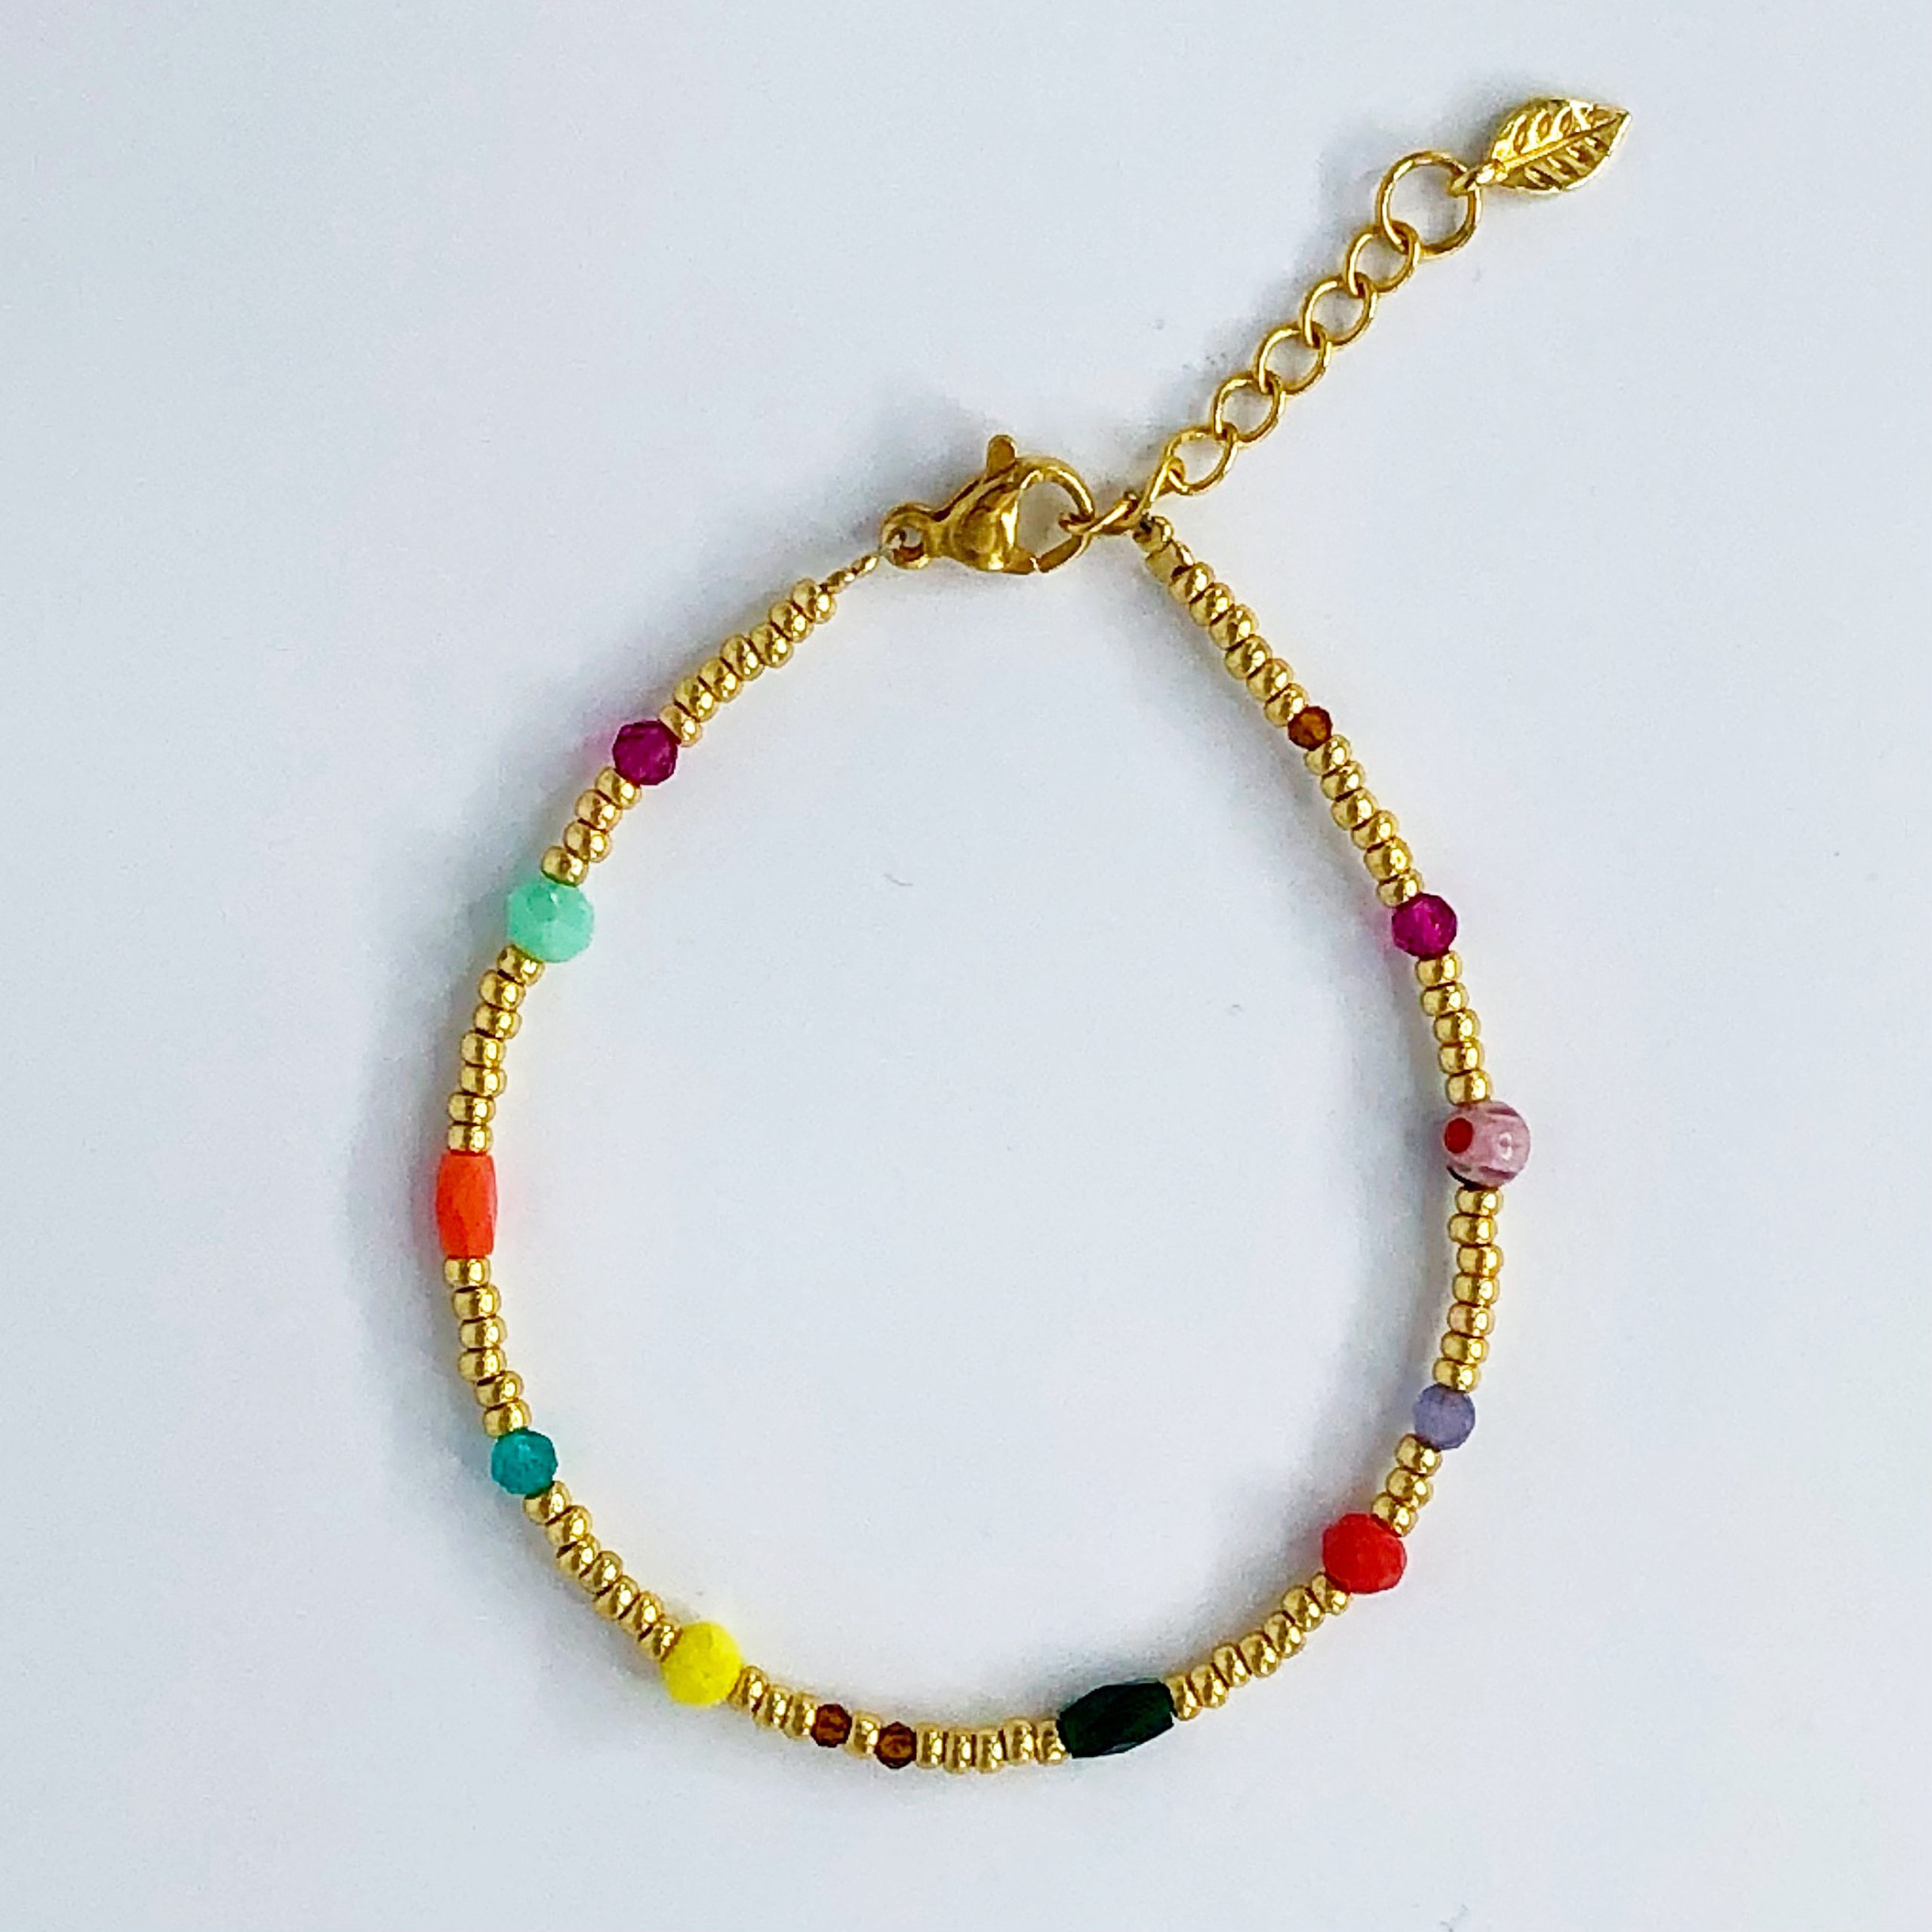 Schurk eerlijk meer Gouden armband met gekleurde steentjes - Playa Venao collectie - Coco Balu